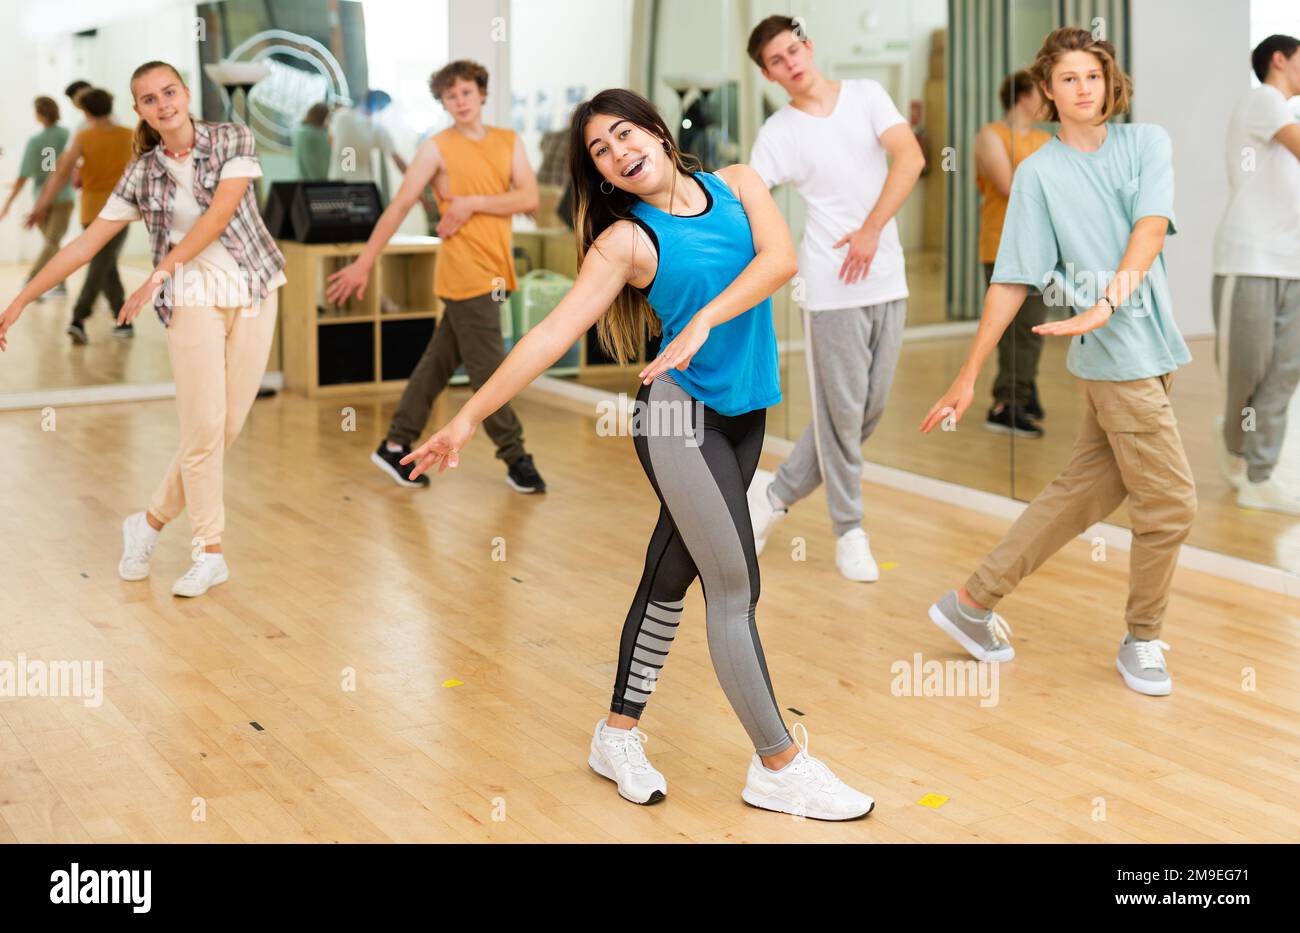 Bonne brune adolescente pratiquant la danse vigoureuse avec le groupe Banque D'Images